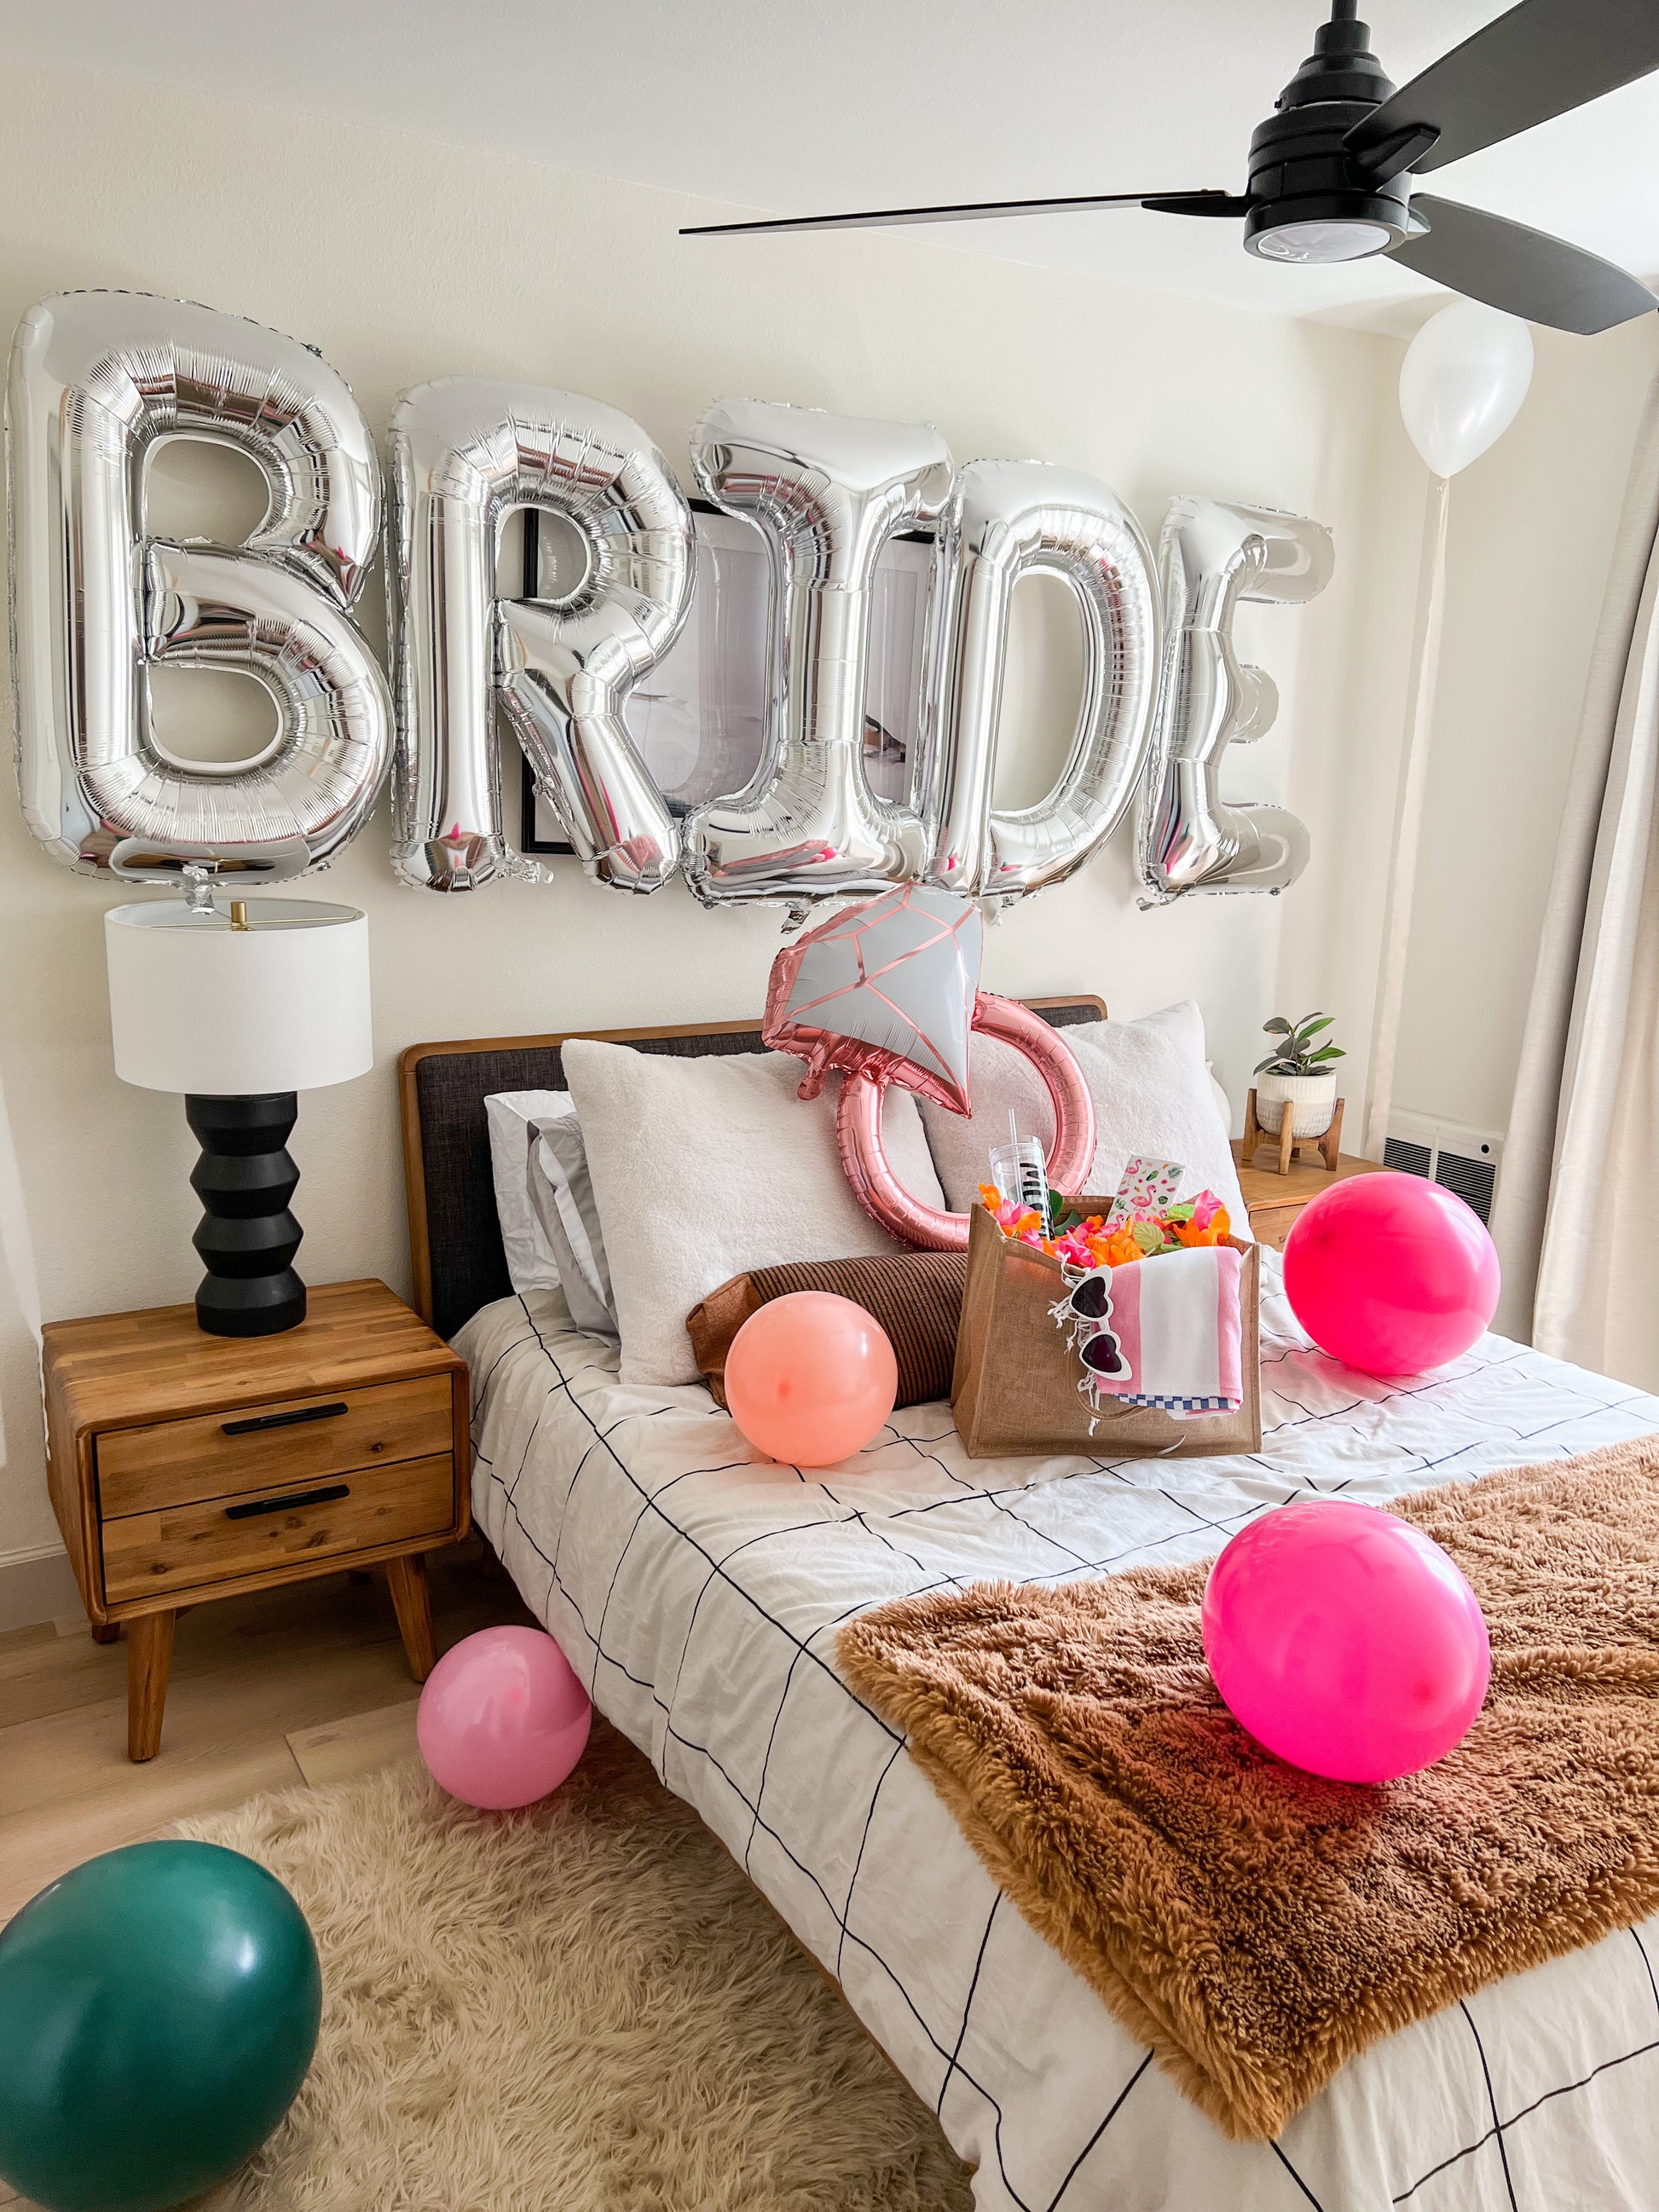 Bride Room Decor – Park City Bachelorette